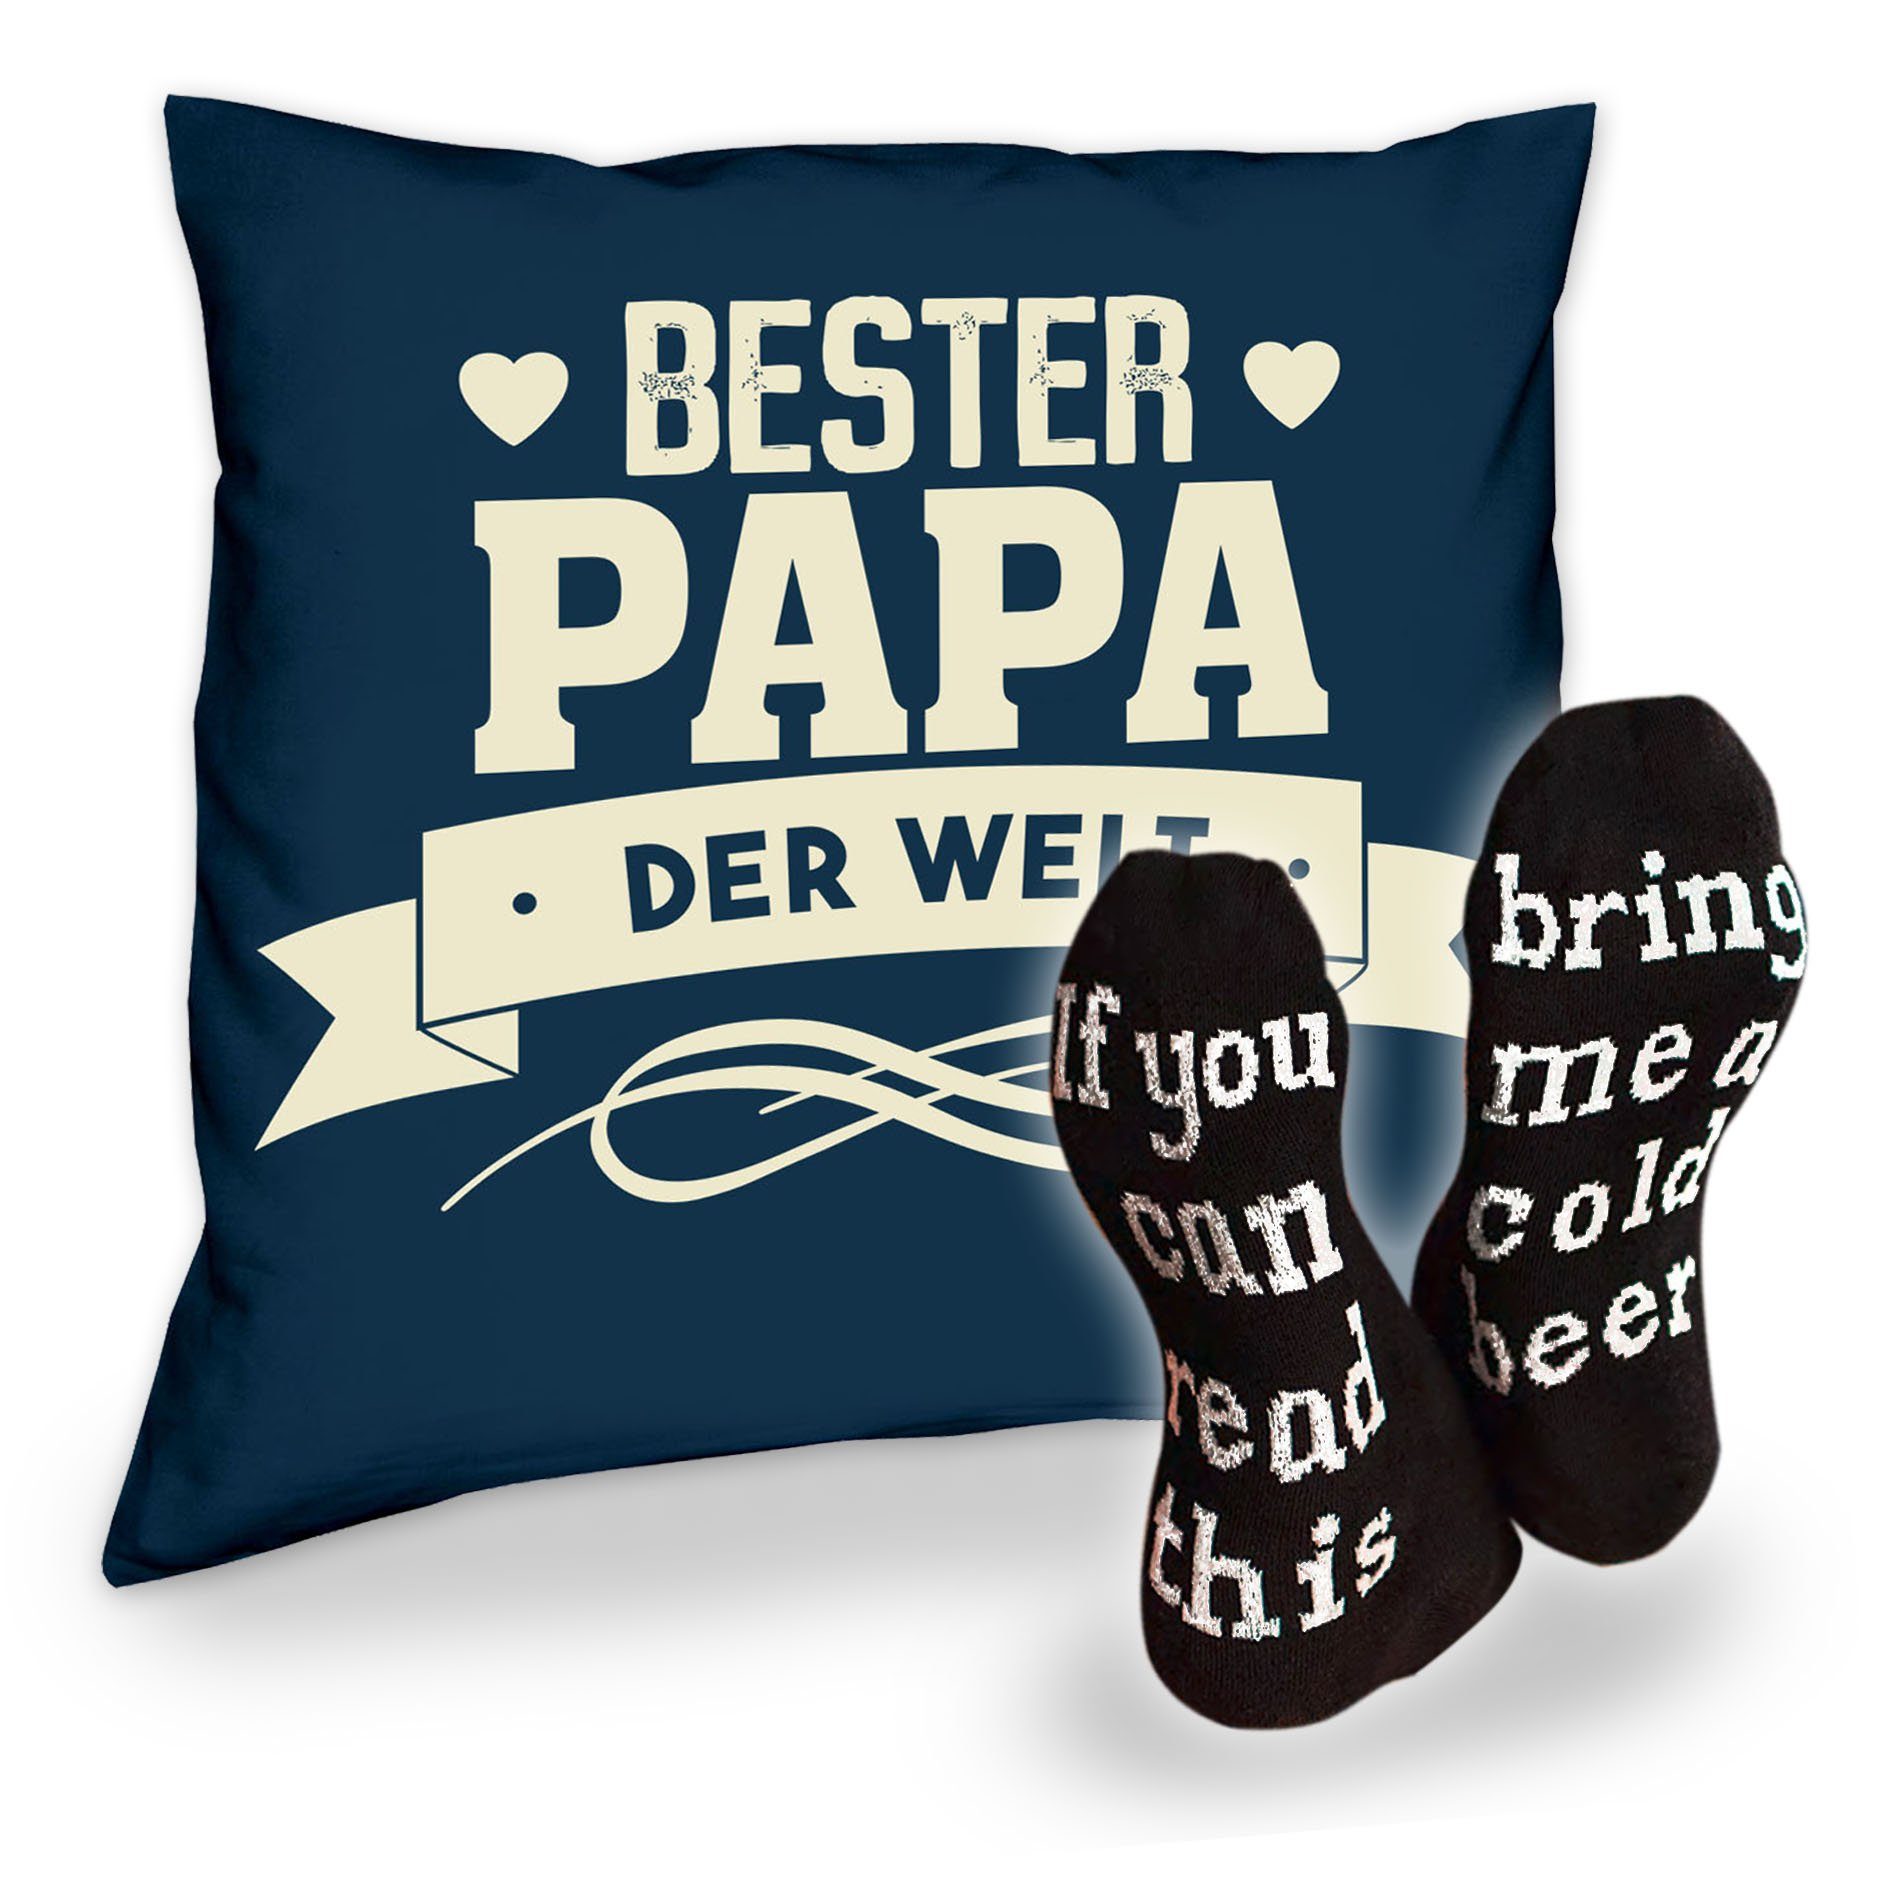 Soreso® Dekokissen Kissen Bester Papa der Welt und Socken mit Bier Spruch, Geschenkidee Weihnachtsgeschenk navy-blau